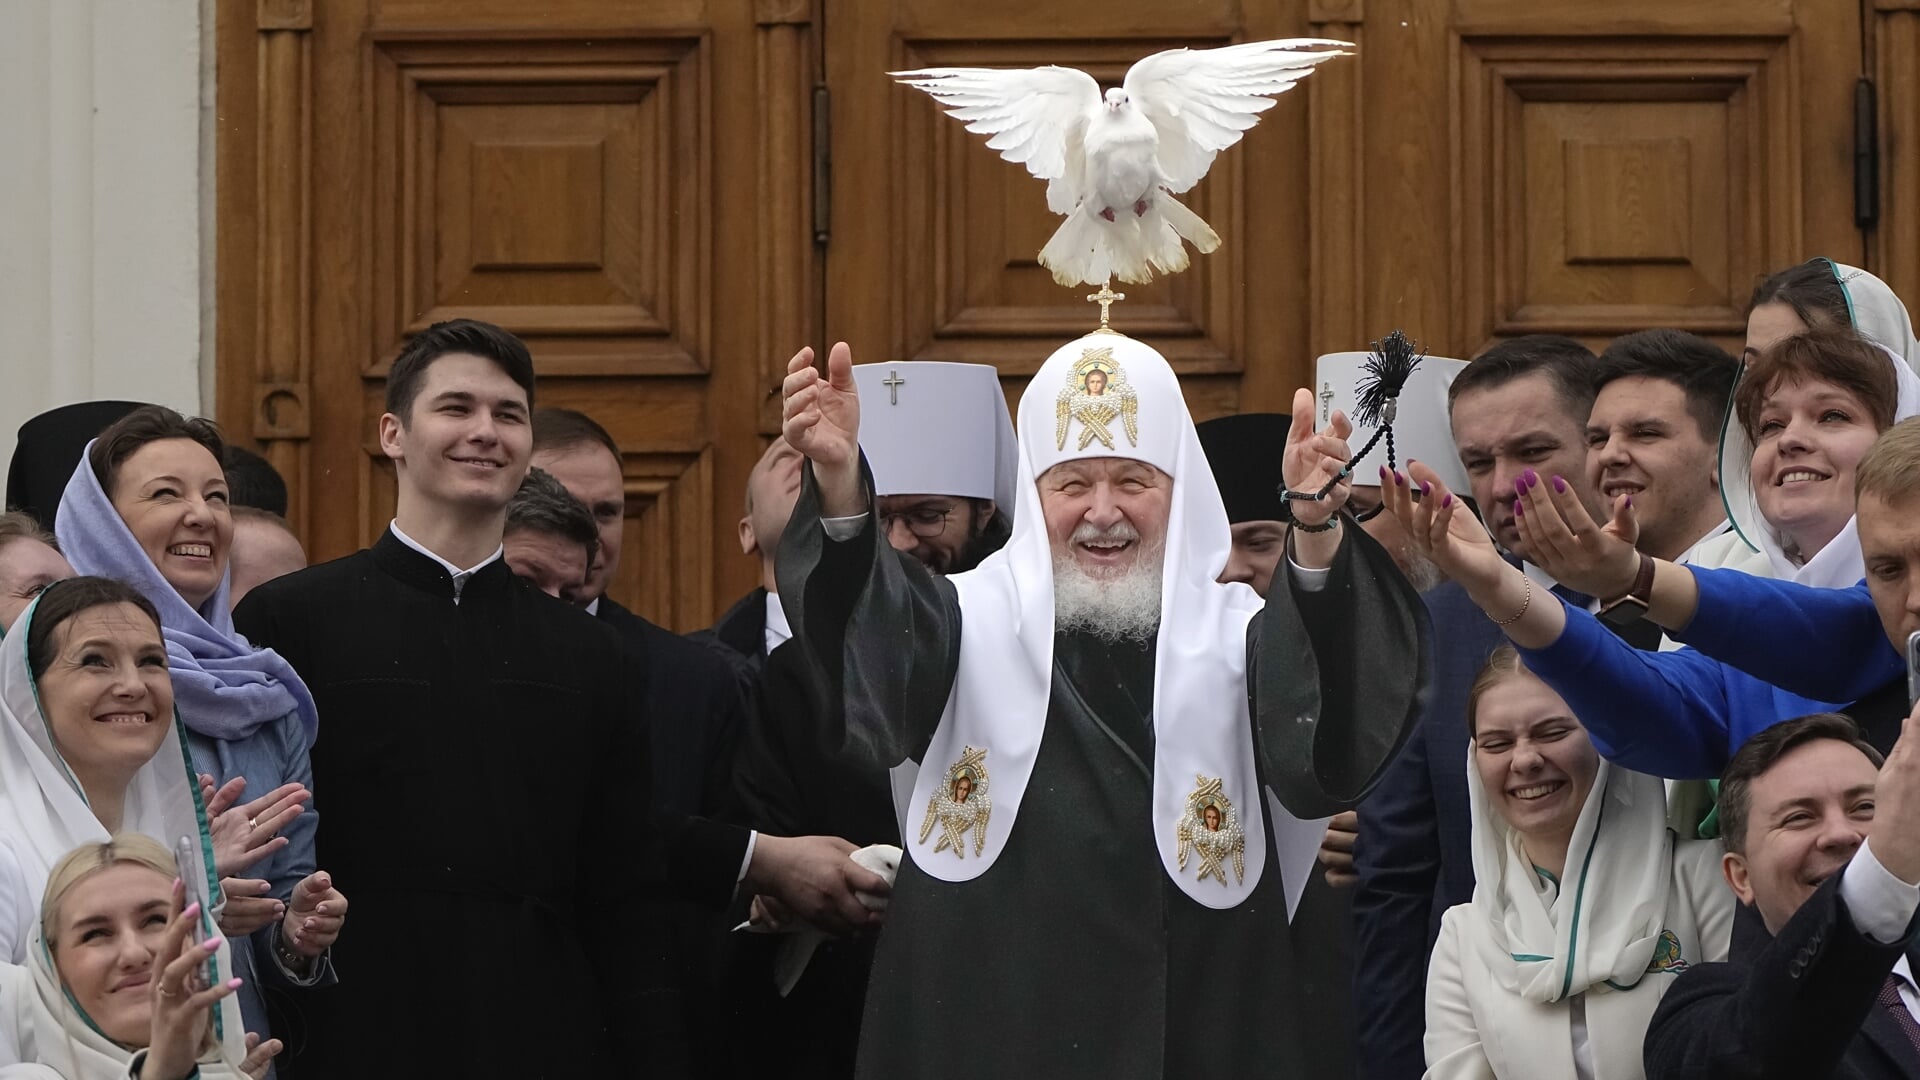 De Russisch-orthodoxe patriarch Kirill vierde op 7 april het feest van de Aankondiging van de Heer, zeven maanden voor het Russisch-orthodoxe kerstfeest. 